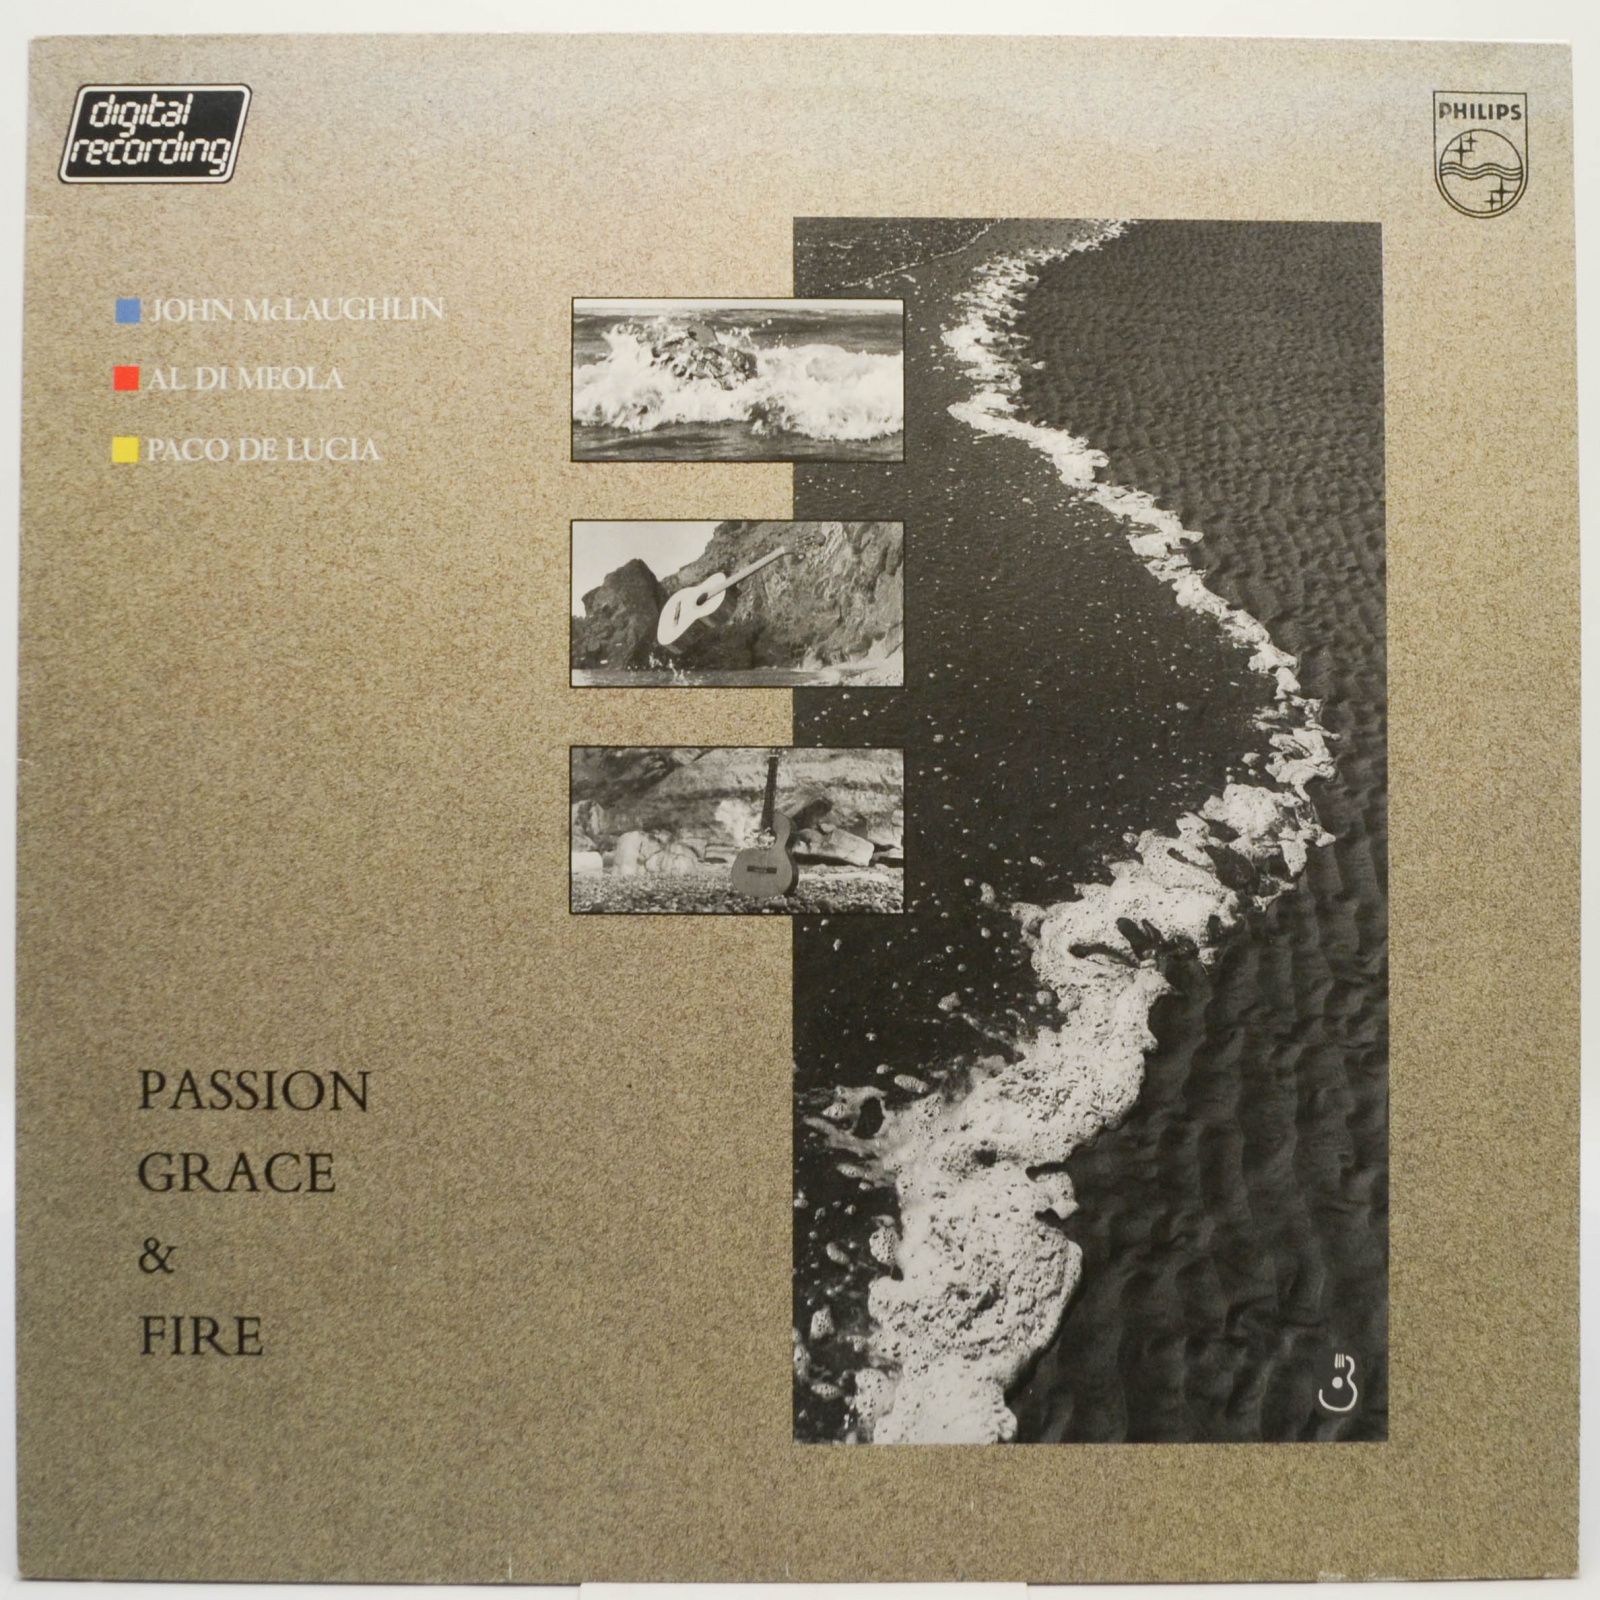 Passion, Grace & Fire, 1983